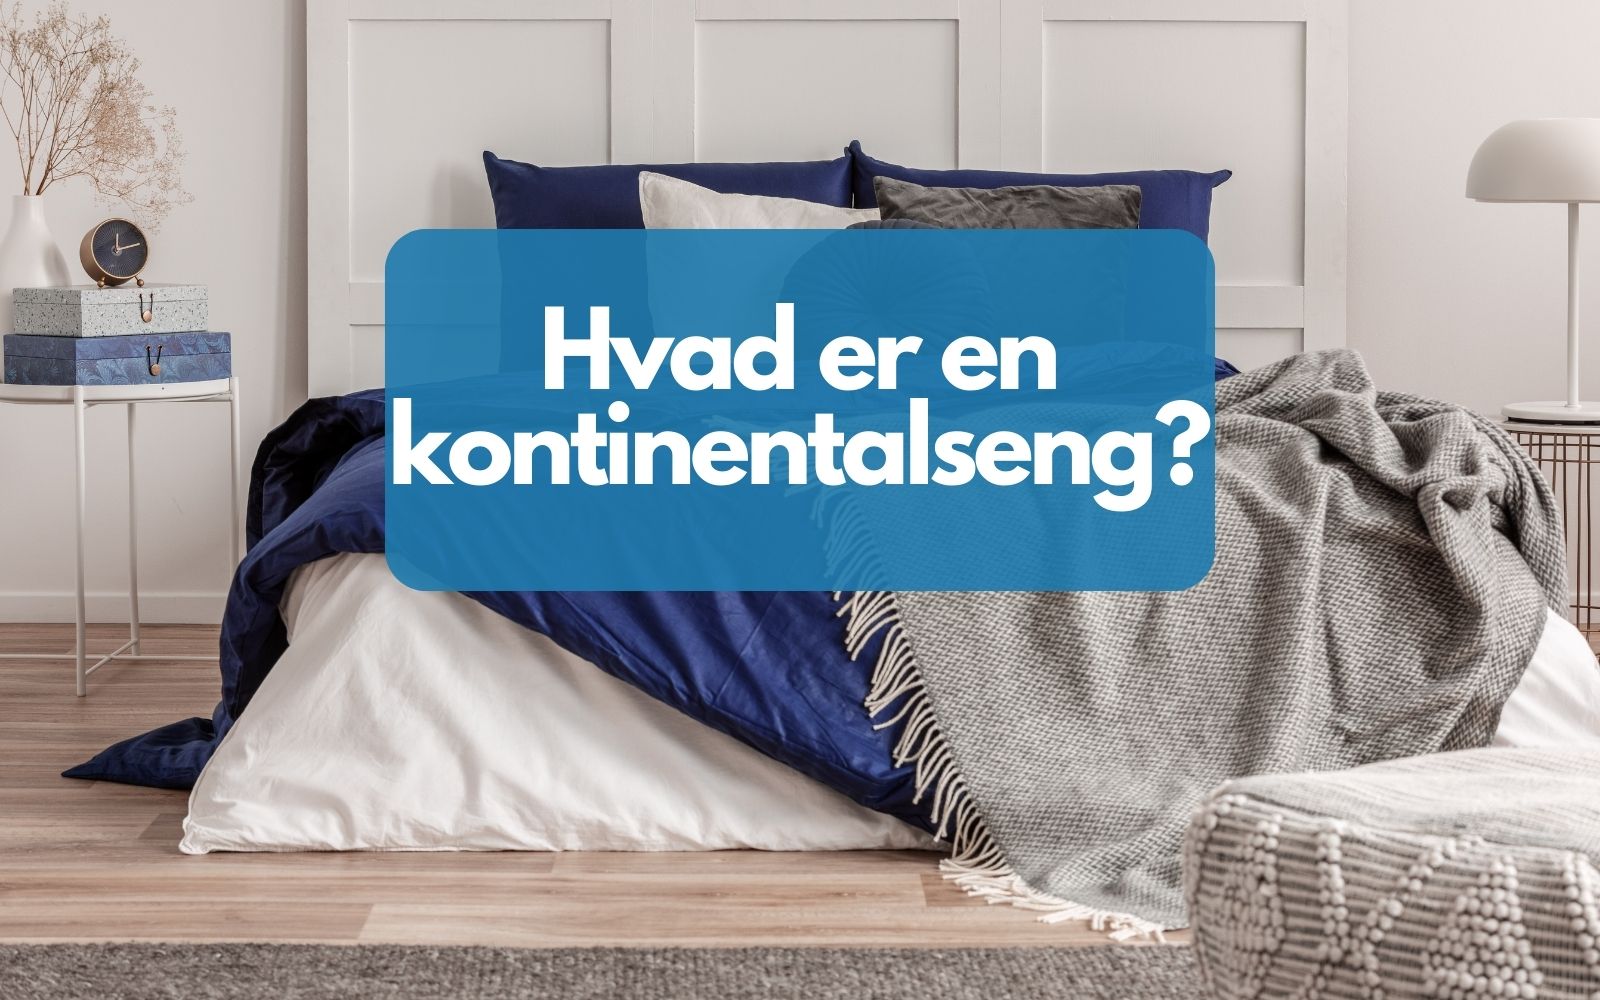 En seng, med teksten "Hvad er en kontinentalseng"